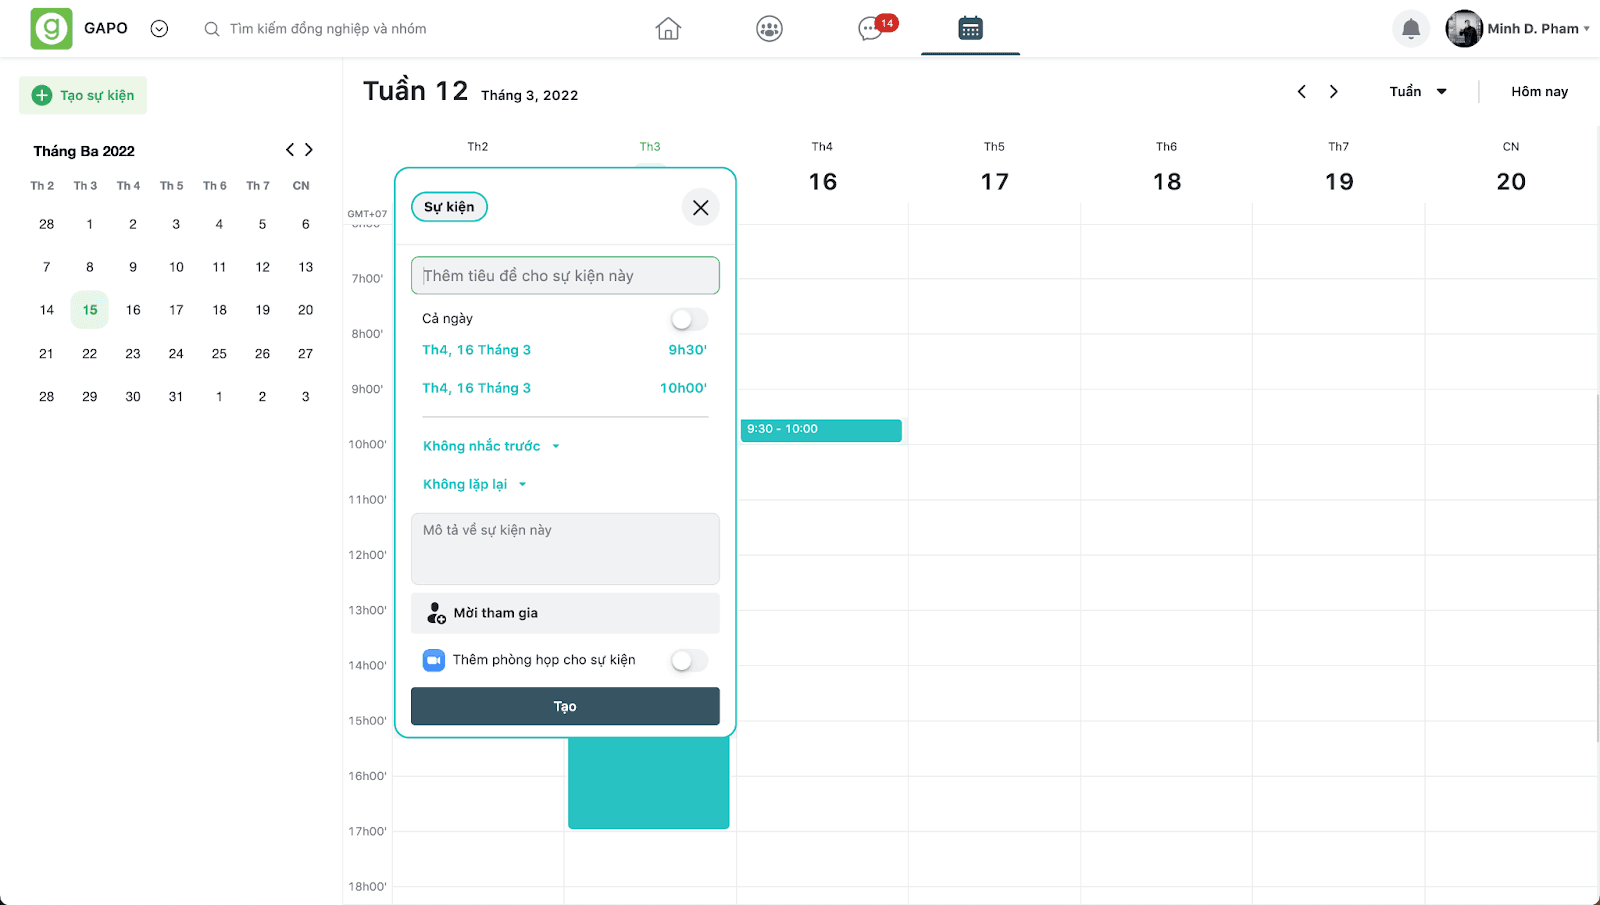 GapoWork cập nhật tính năng mới Calendar trong tháng 3/2022 - Ảnh 2